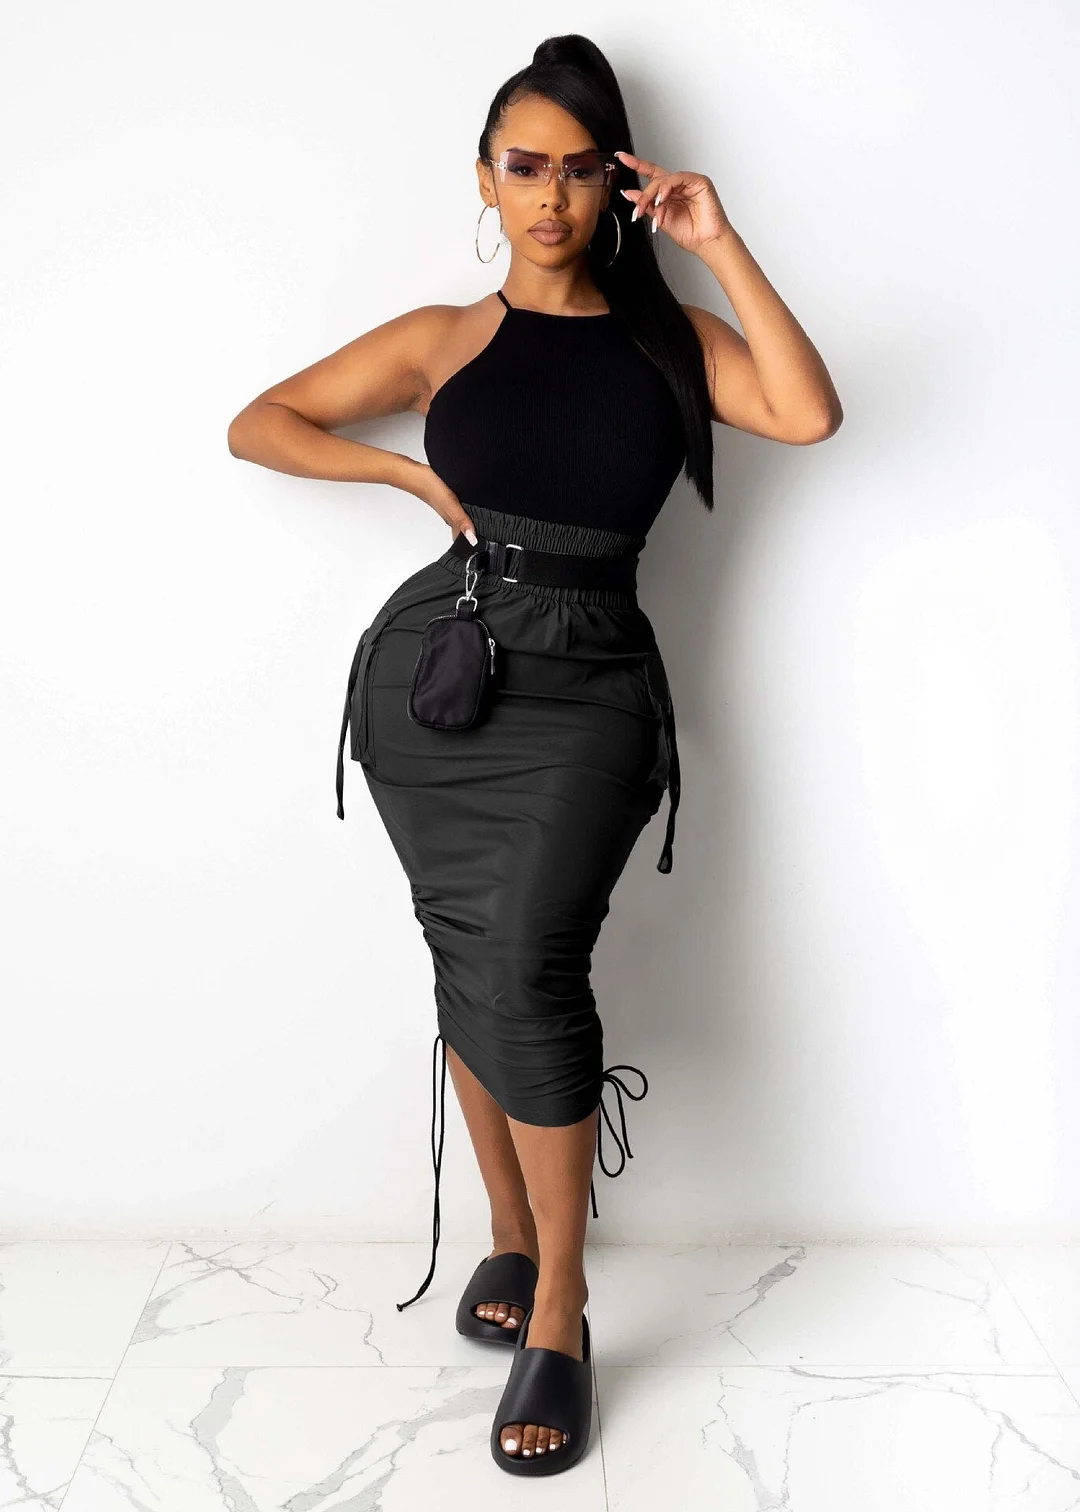 New 2021 Women High Waist Pocket Side String Draped Bodycon Midi Skirts for Streetwear Black White Skirt